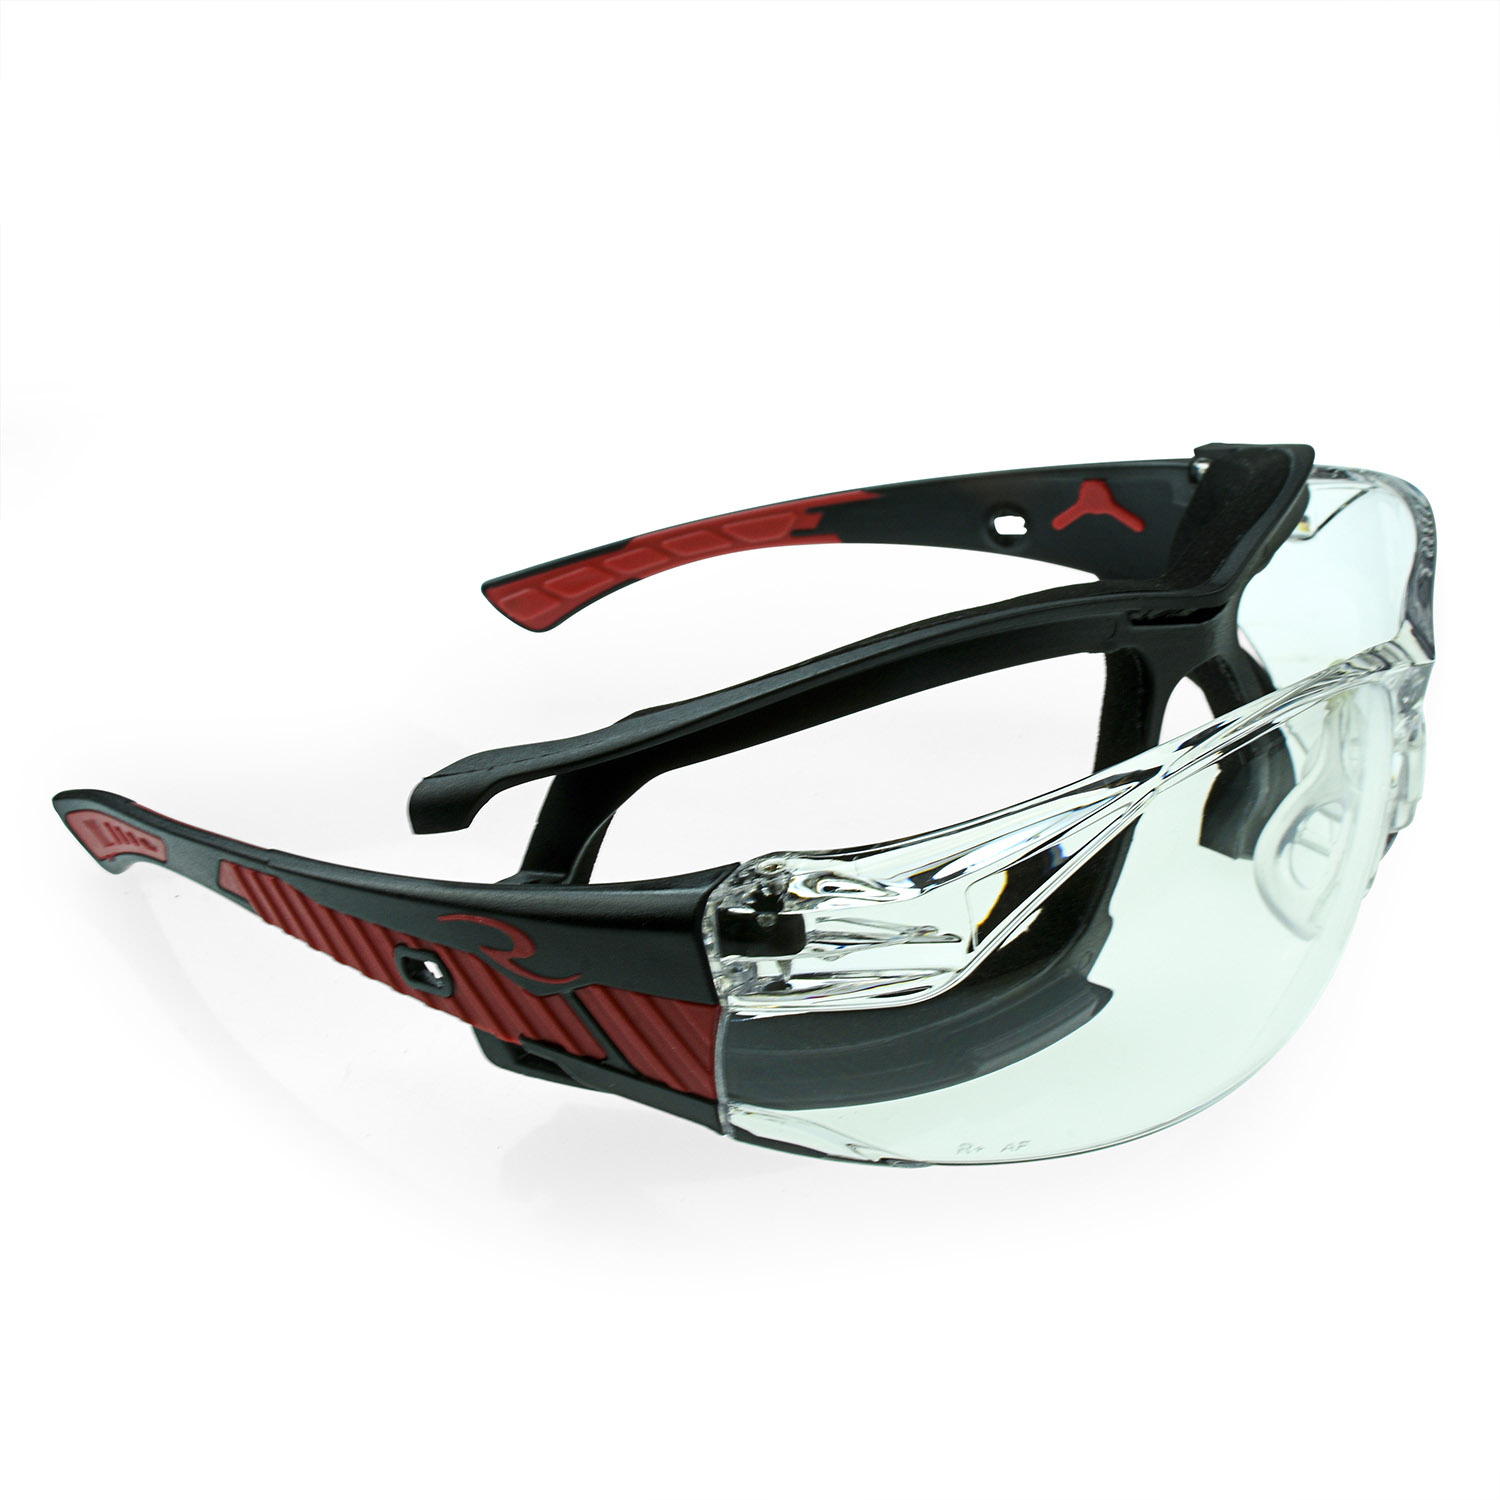 BG1-21-x1-RAD.fs Radians BG1-21 Safety Glasses with Anti-Fog Lens for sale online 